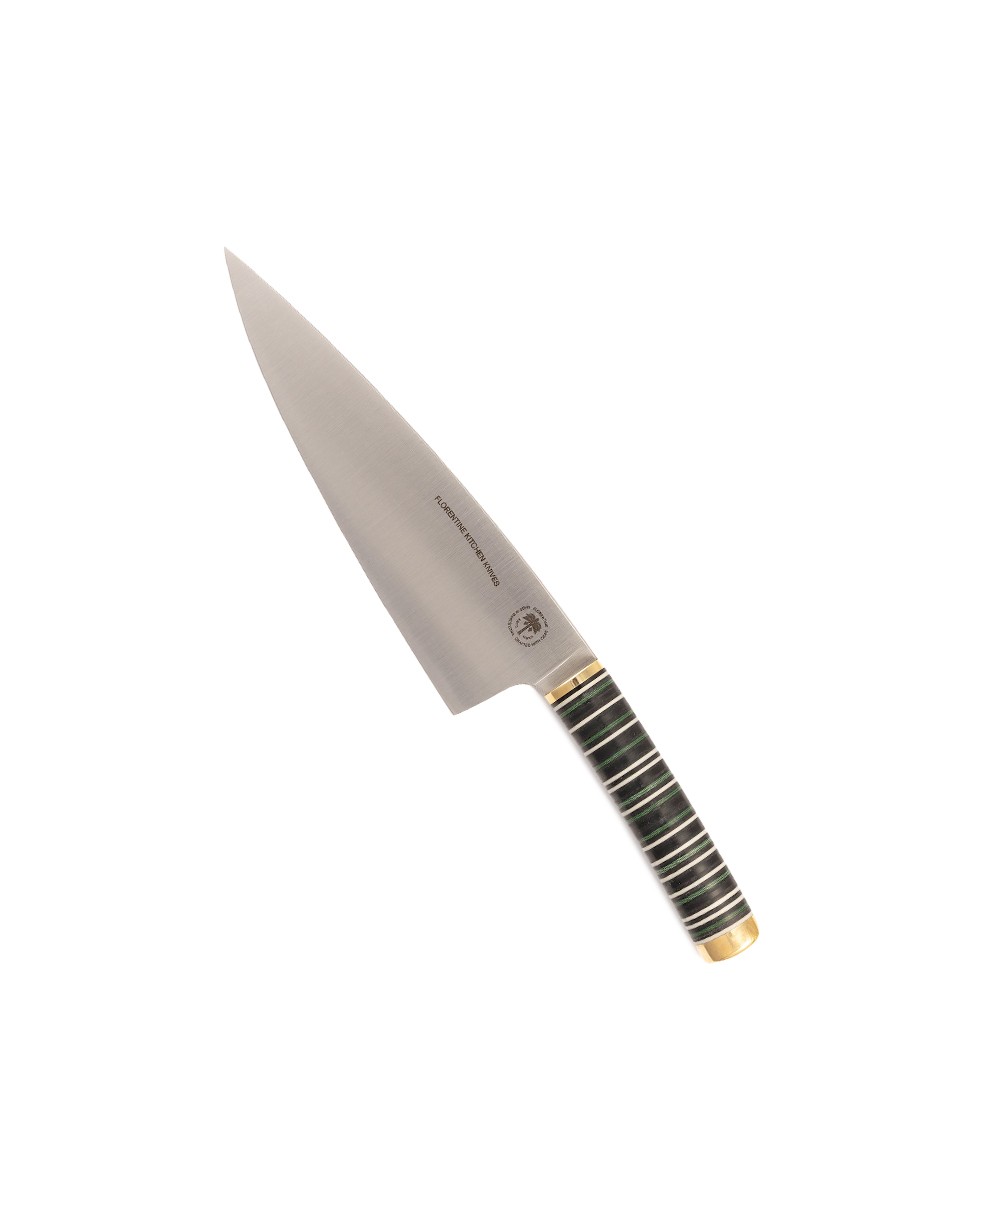 Produktbild des Florentine Chef Knife in grün von Florentine Kitchen Knives im RAUM concept store 